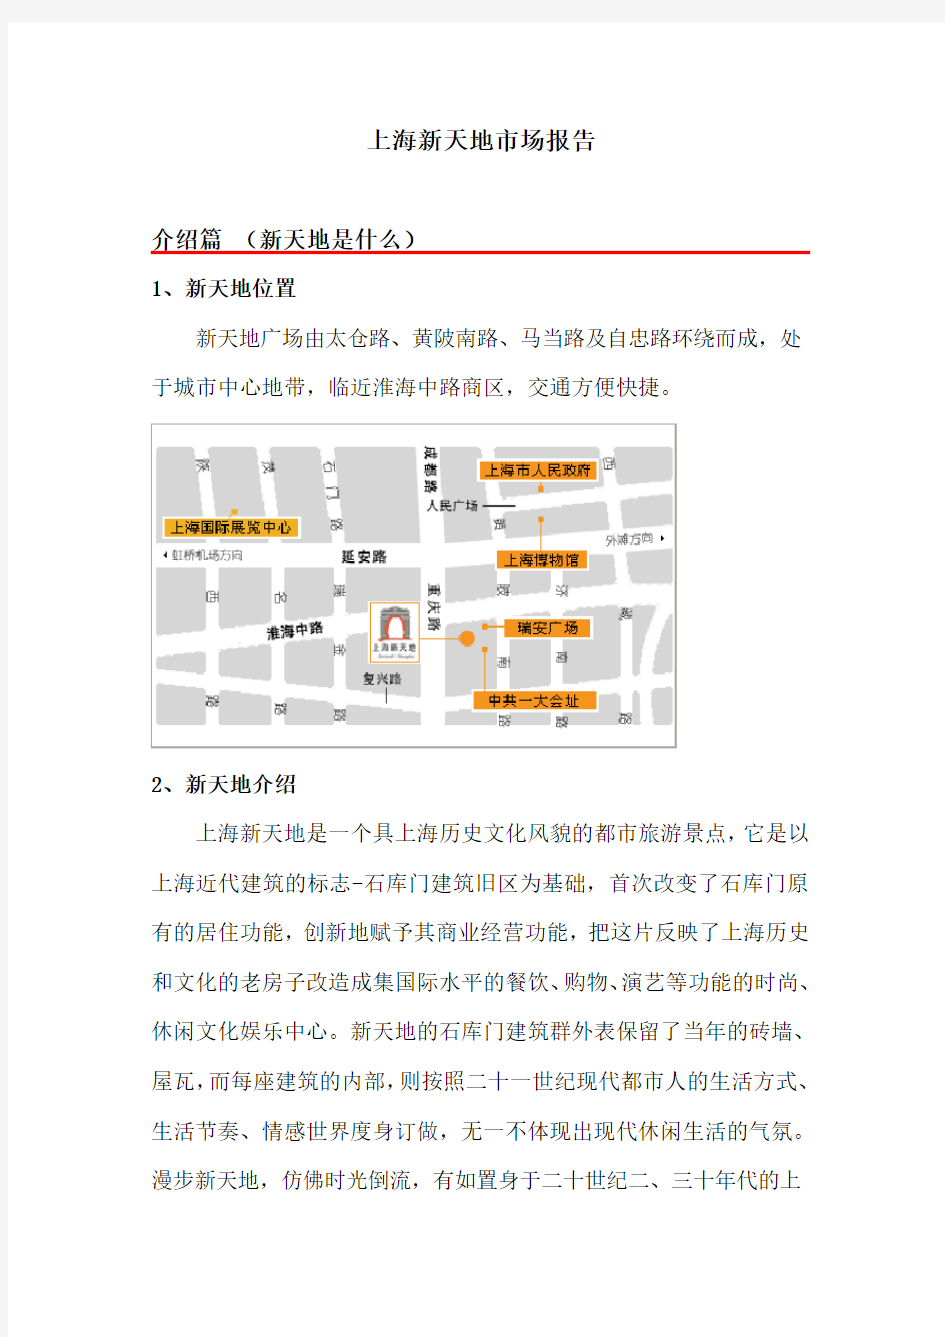 上海新天地市场分析报告